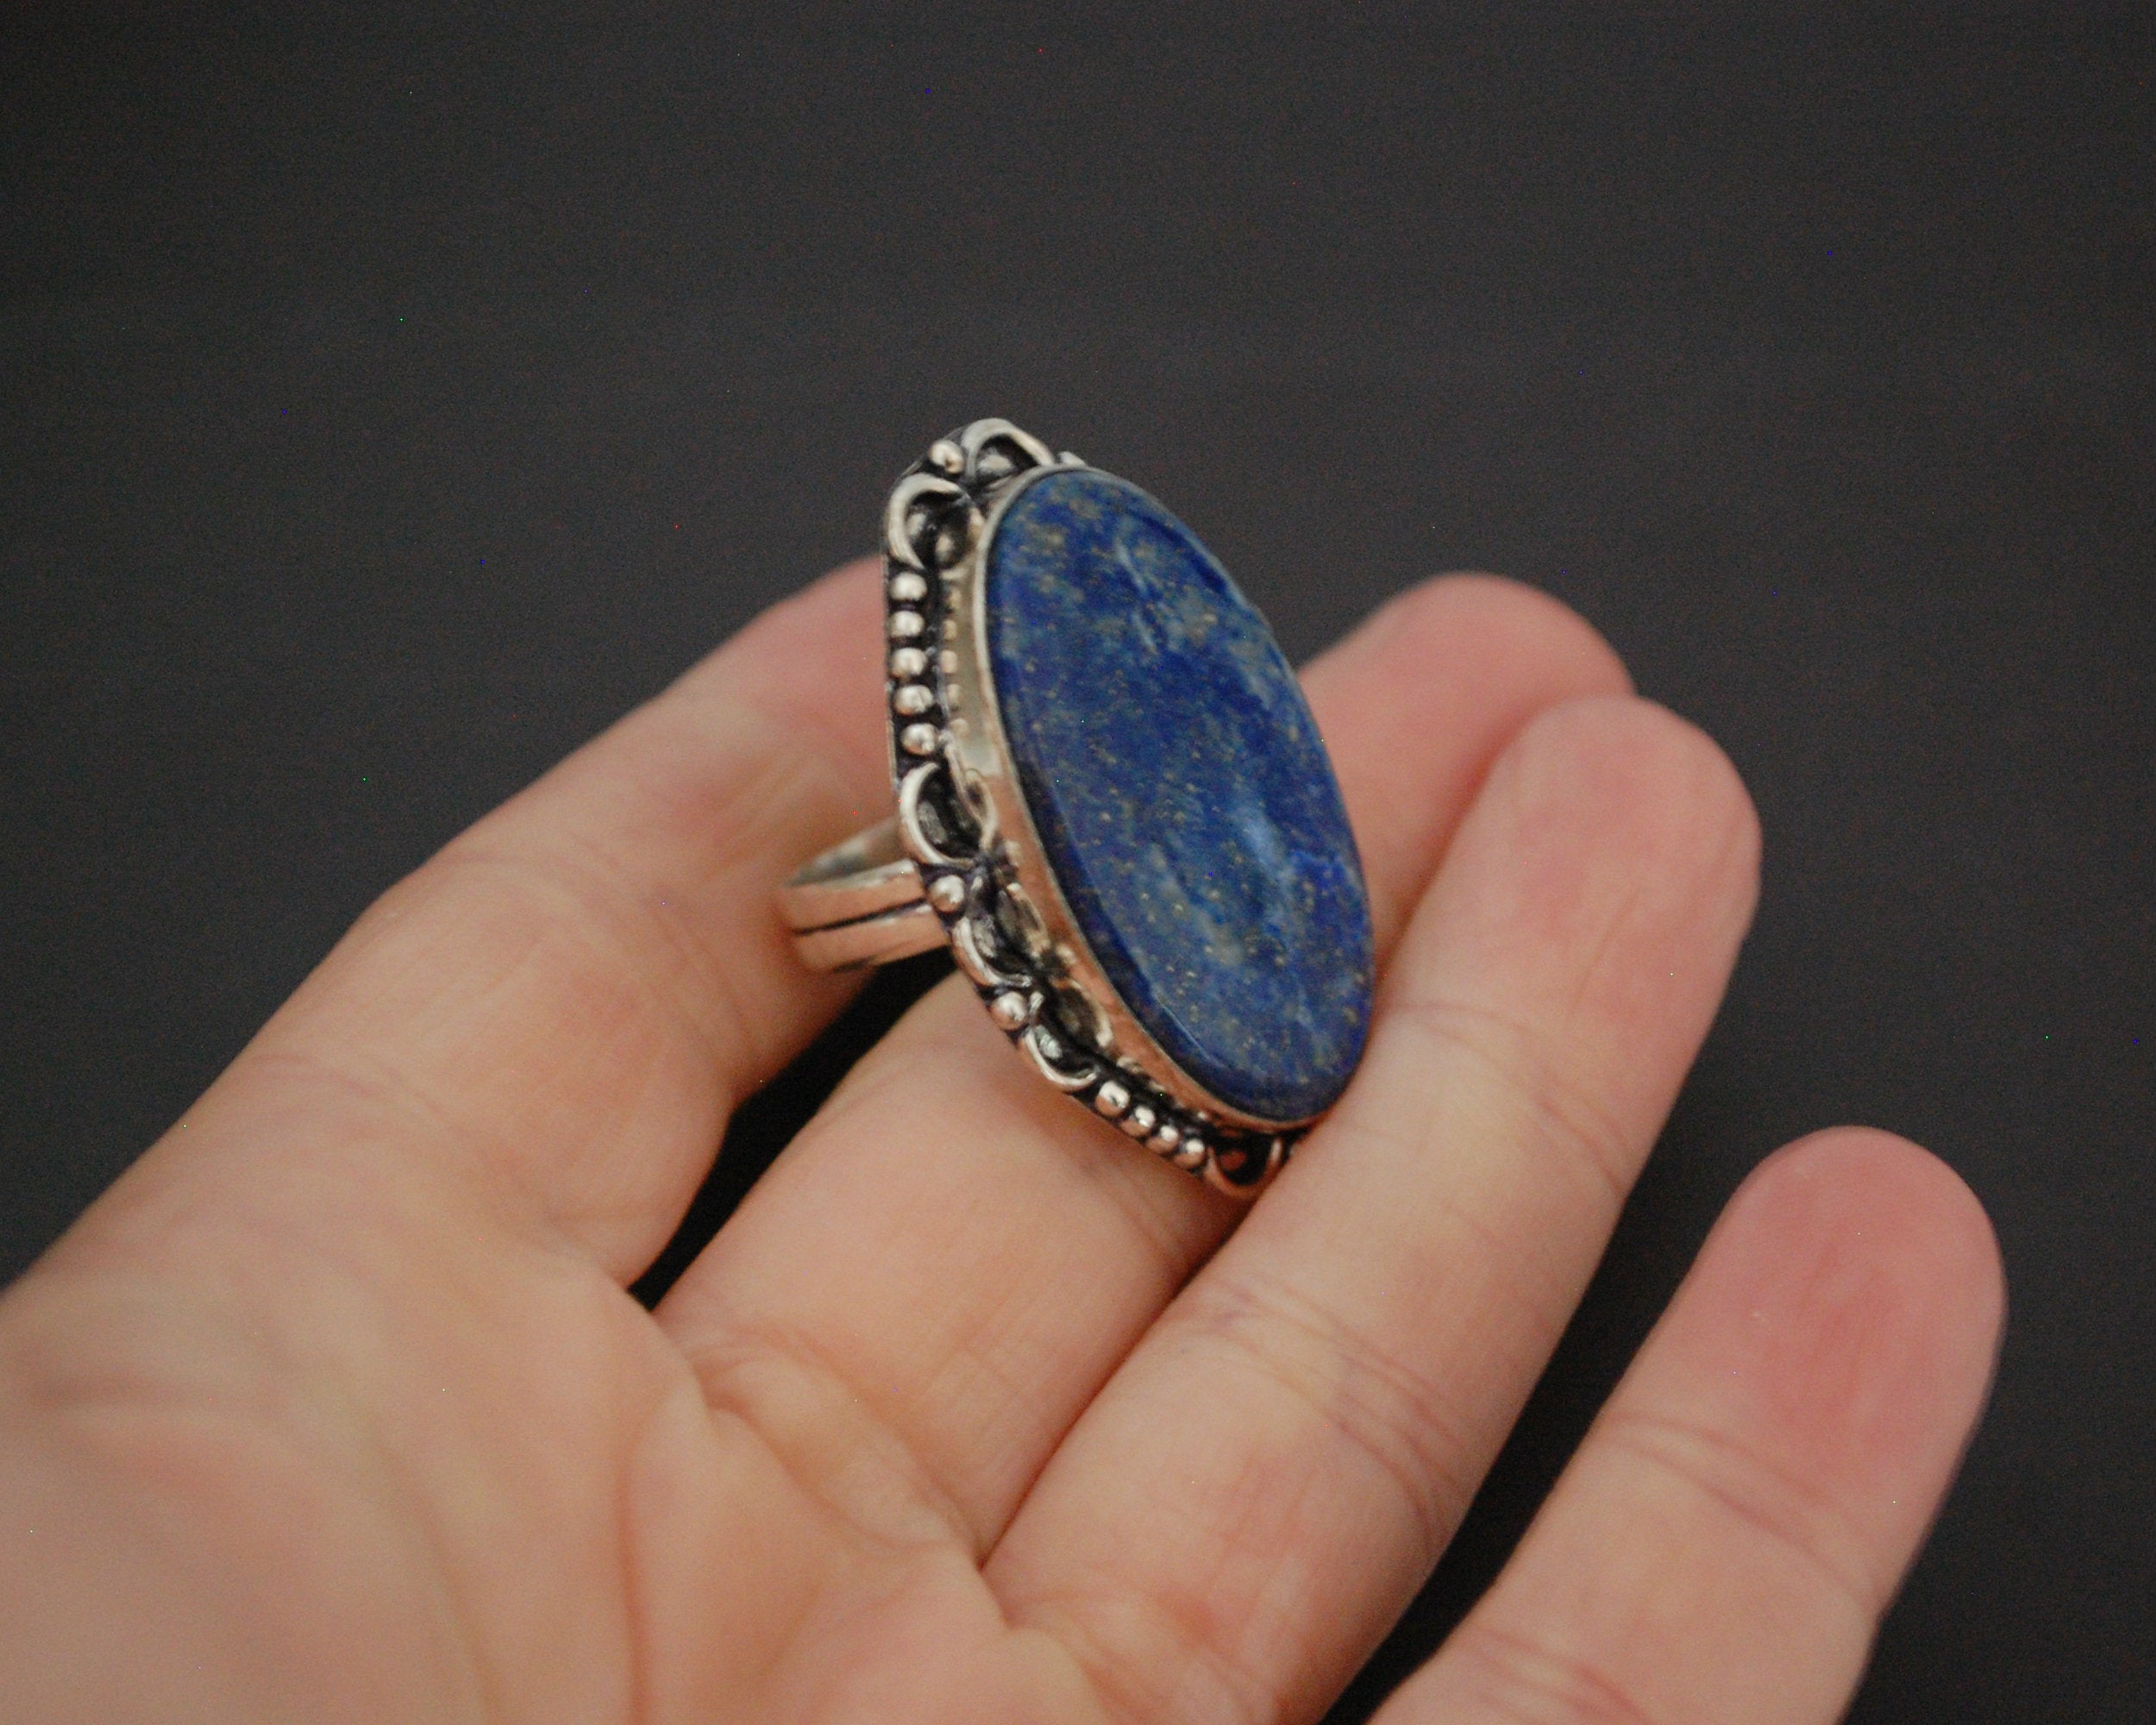 Ethnic Lapis Lazuli Ring from India - Size 9